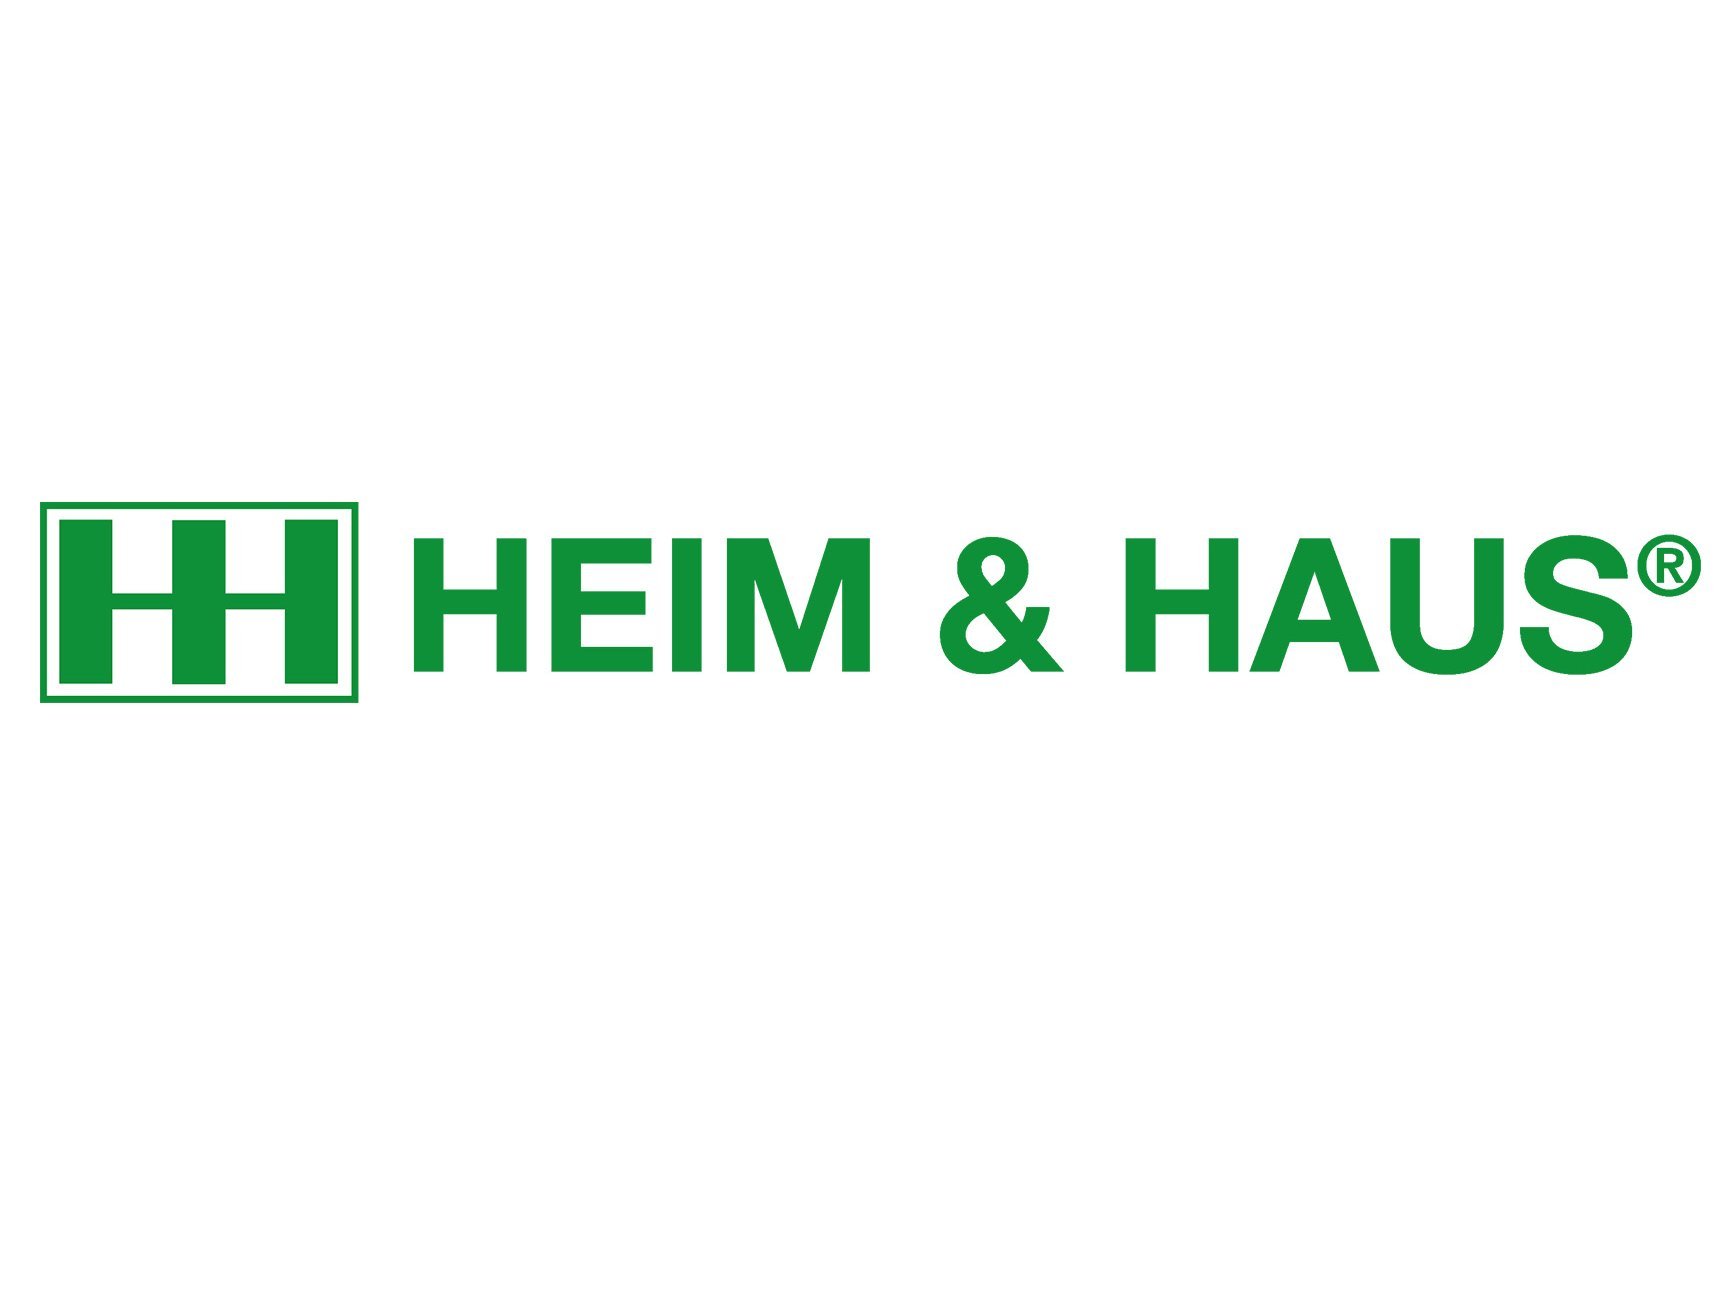 HEIM & HAUS Logo grün auf weiß